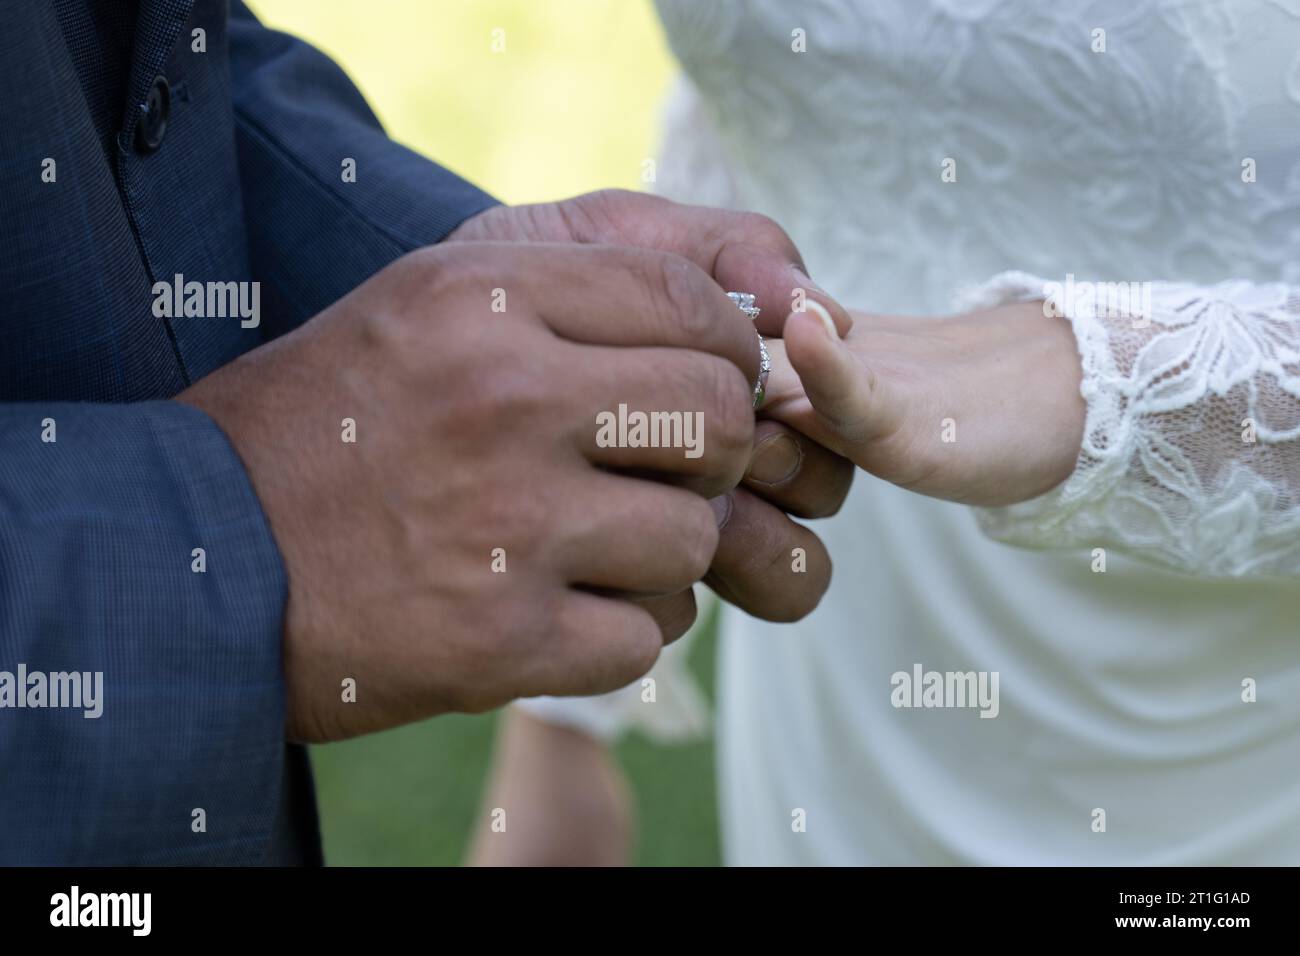 Le mani masoline dello sposo mettono l'anello nuziale sul dito della sposa come simbolo del suo impegno. Foto Stock